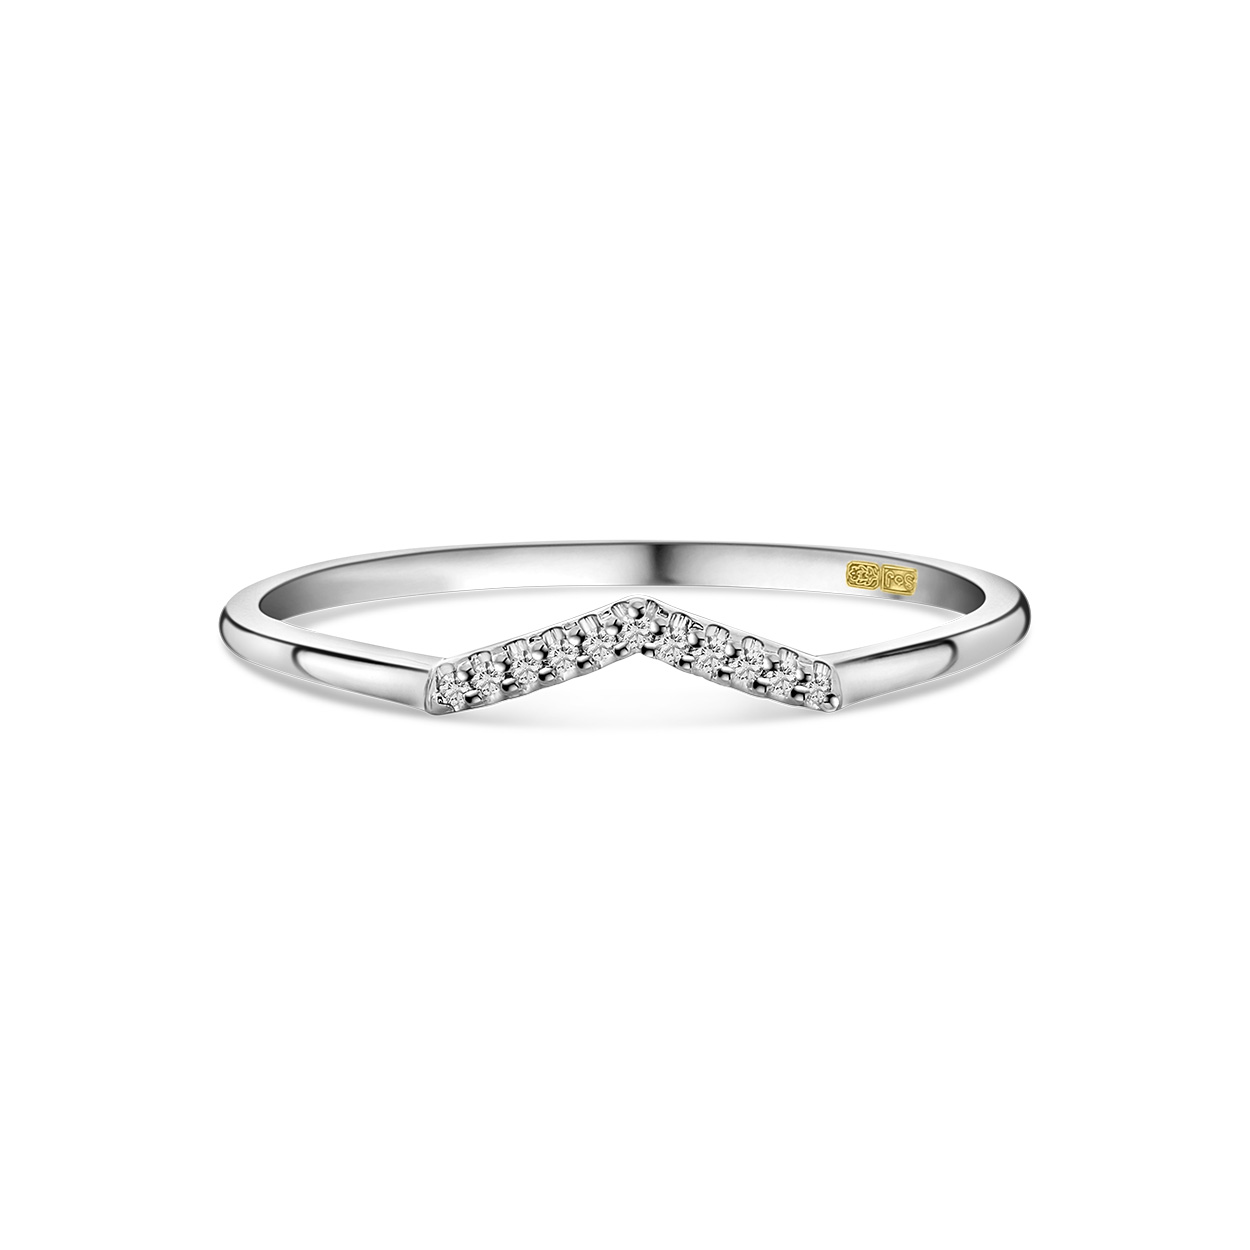 Witgouden ring v vorm met diamanten R138-RG50183-W